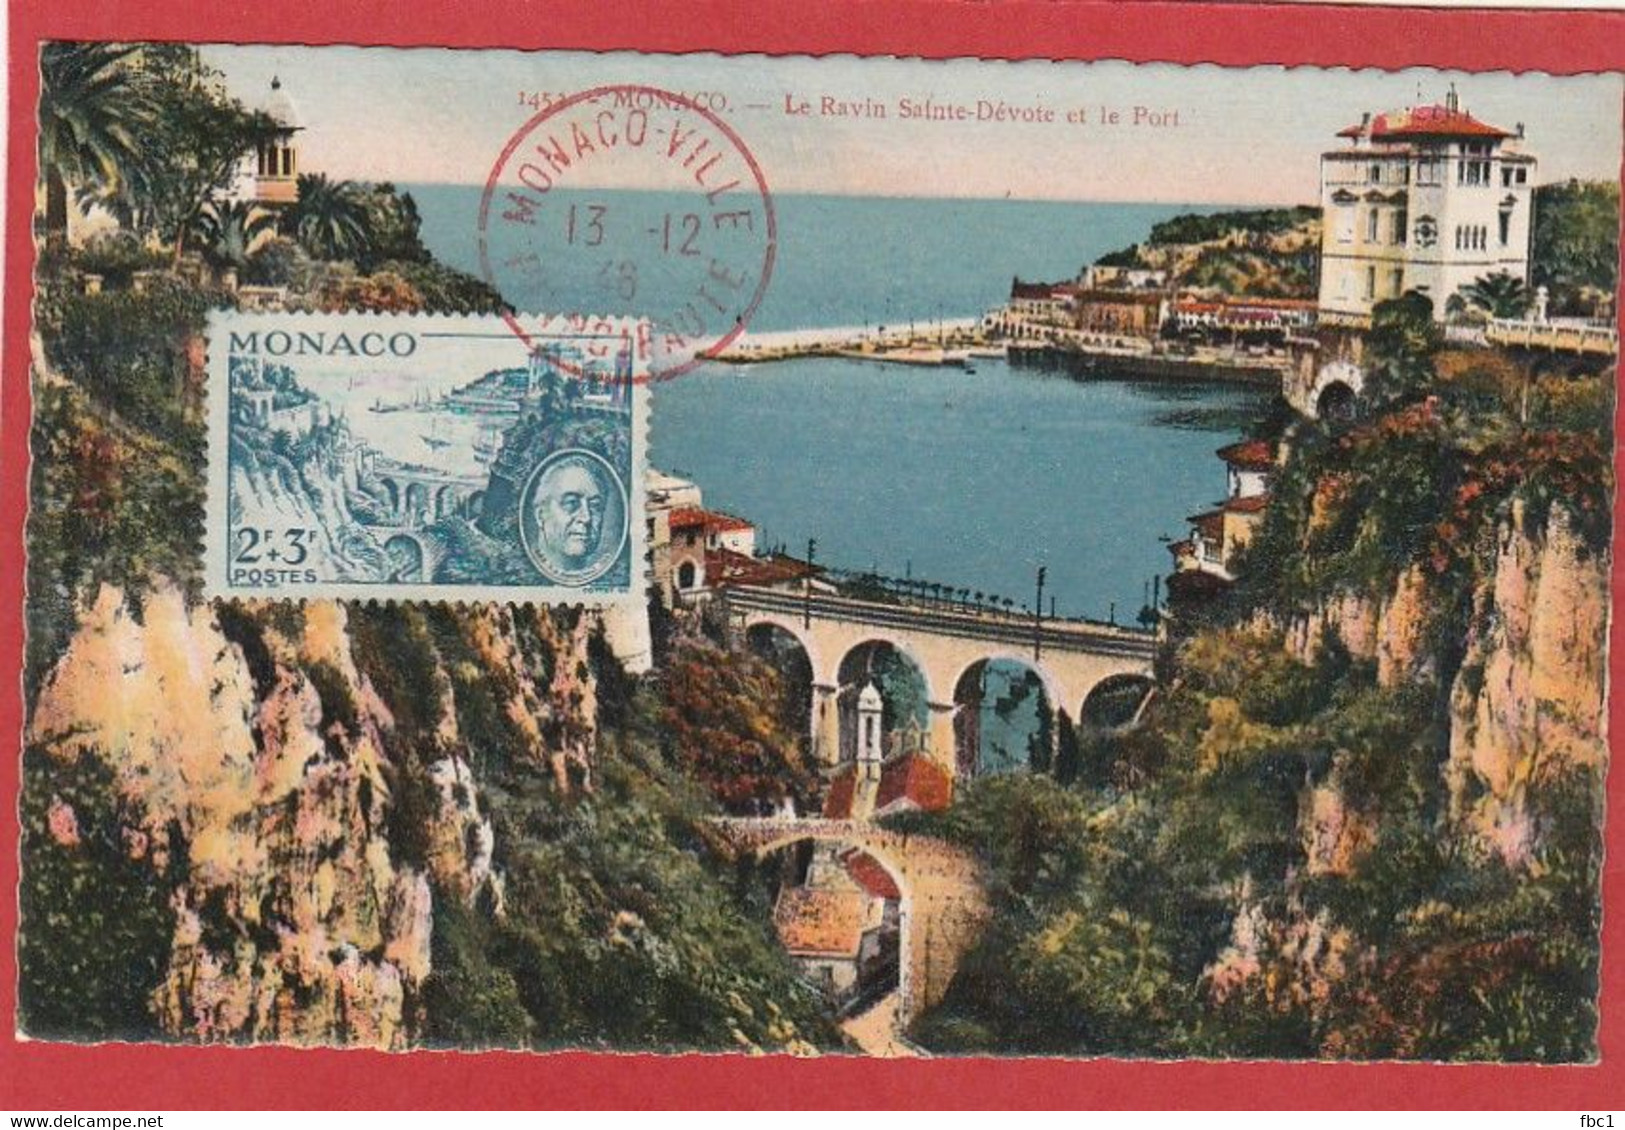 Monaco - Carte Maximum - Roosevelt N°299 (YT) 1946 Monaco Ville - Maximum Cards